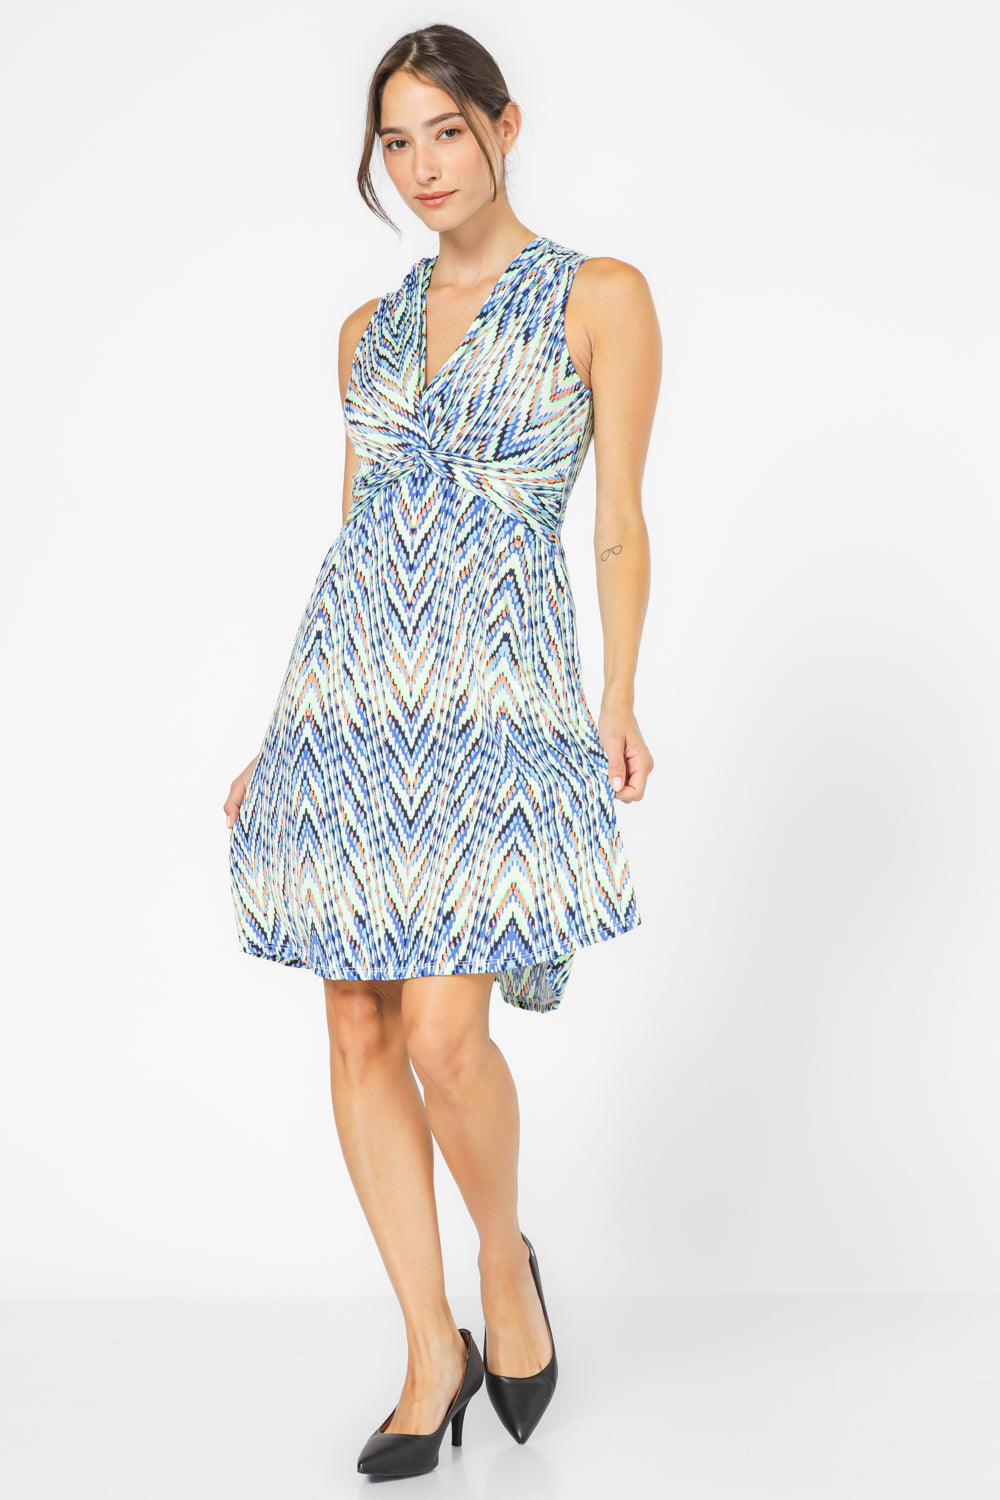 שמלה מיני עם הדפס בצבע כחול